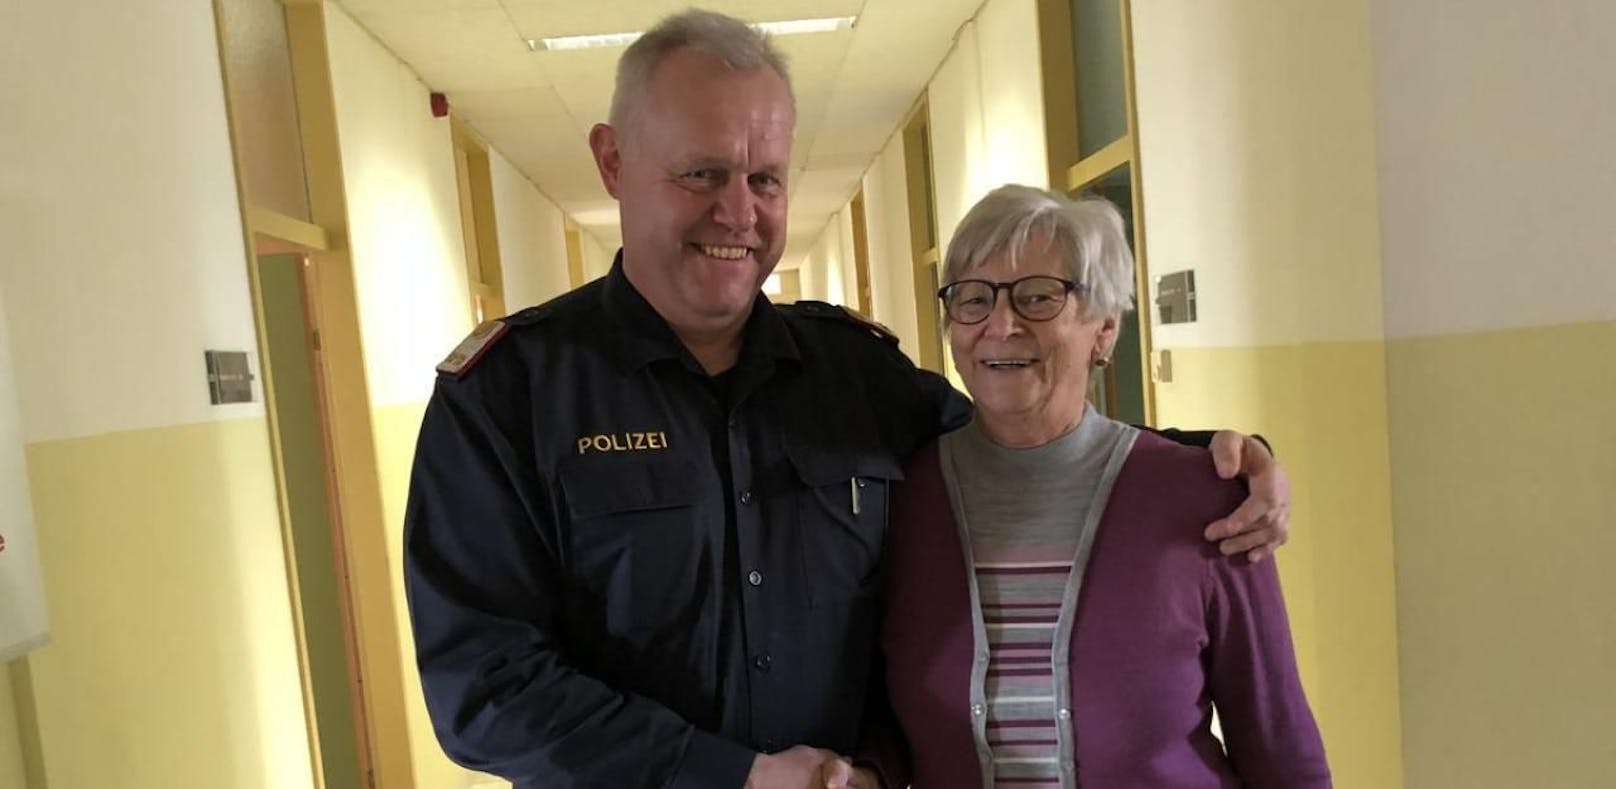 Polizist rettet Frau beim Einkaufen das Leben